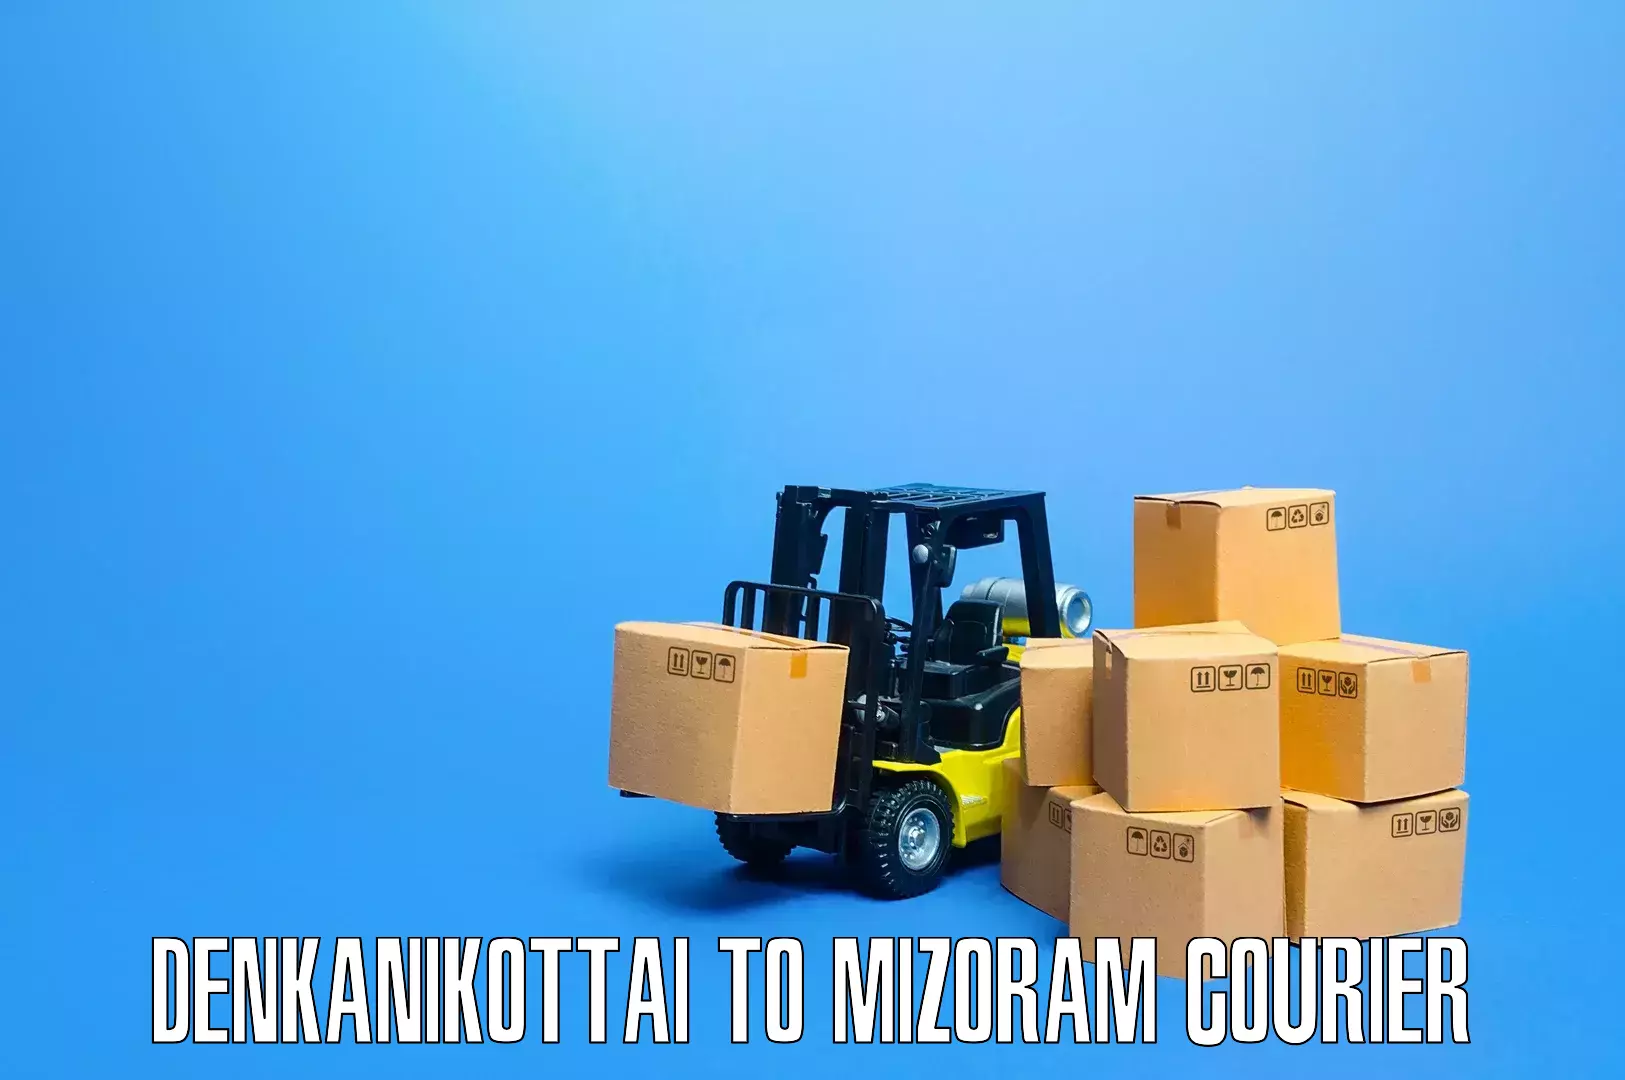 Specialized home movers Denkanikottai to Mamit